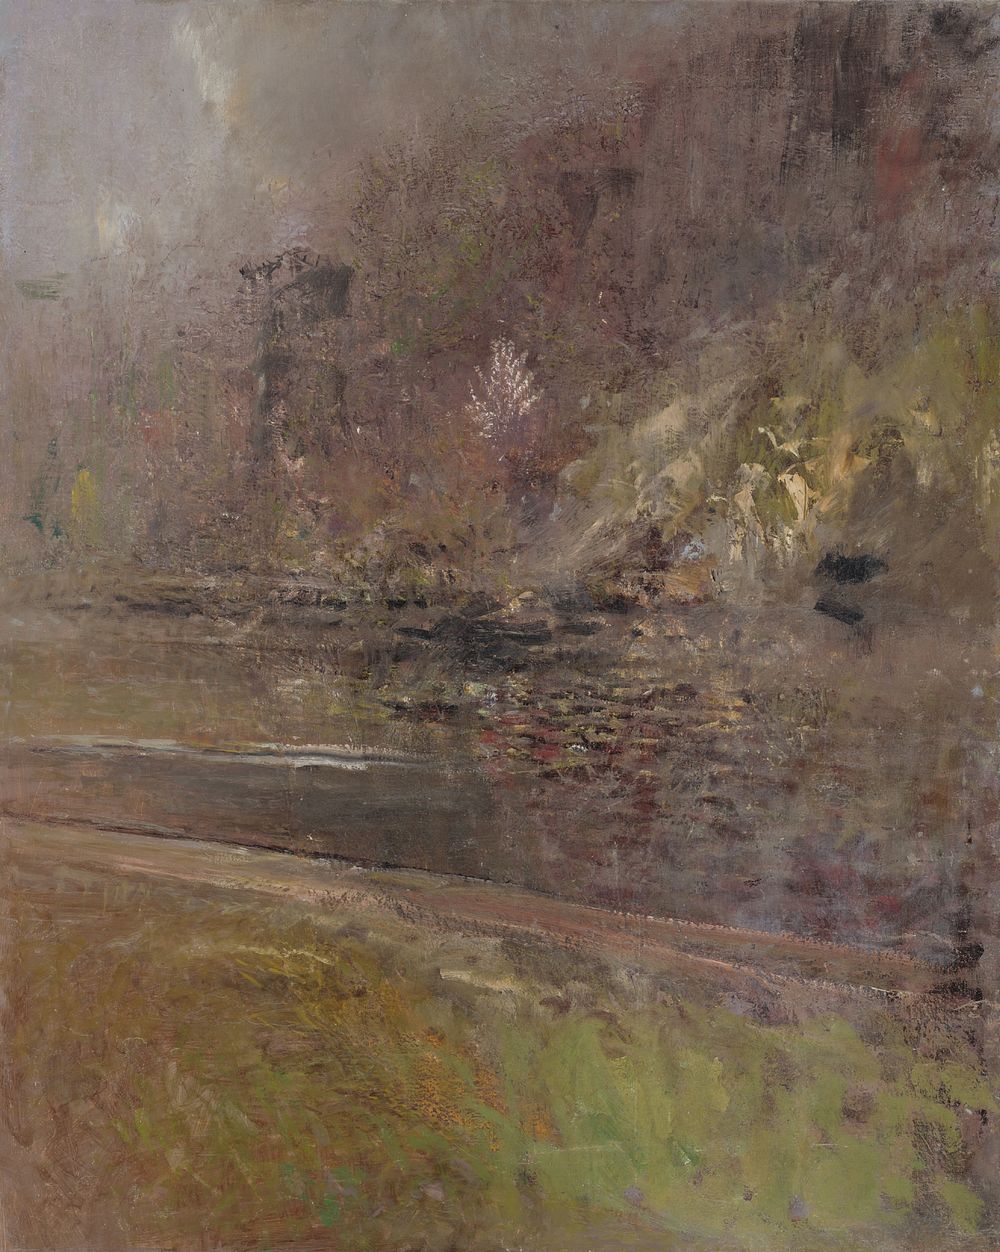 Fragment of a landscape by László Mednyánszky